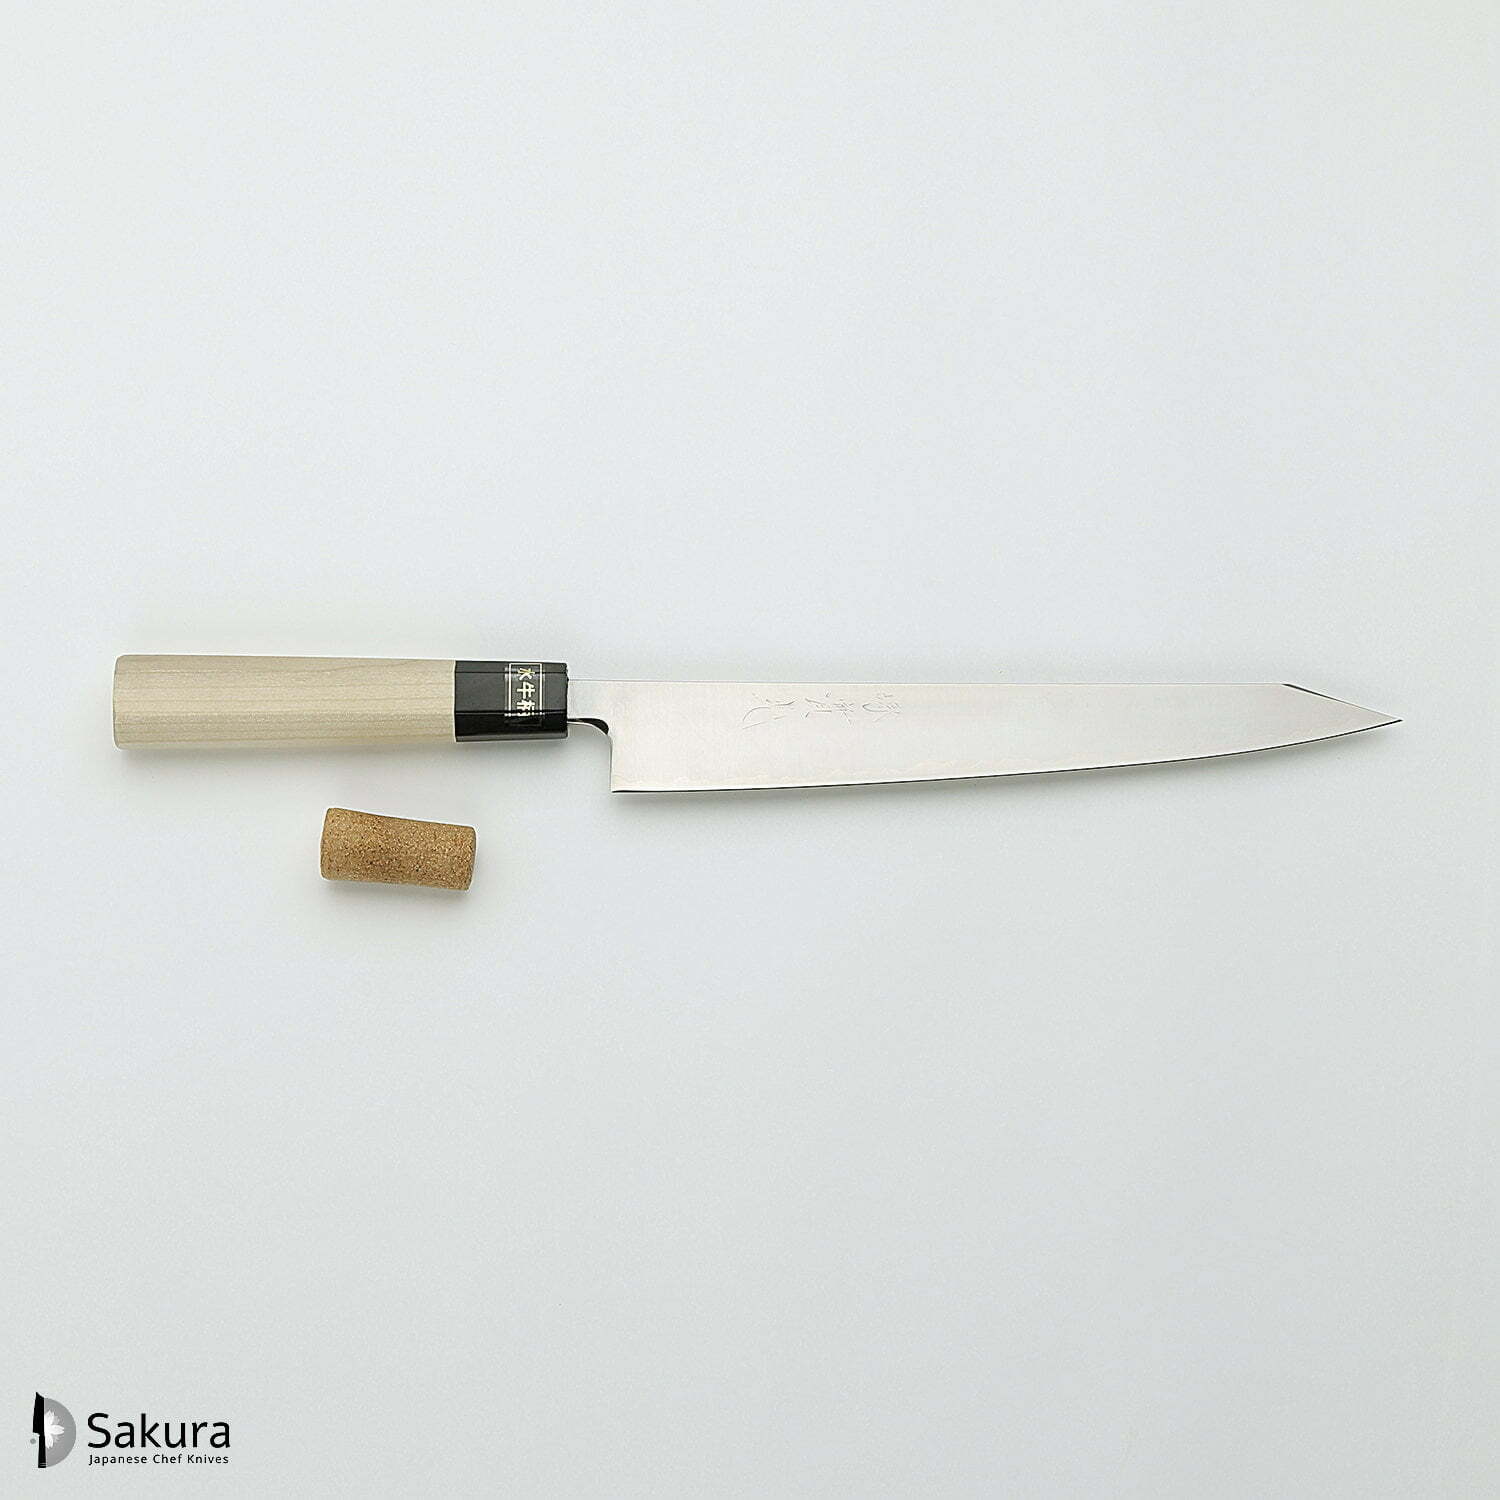 סכין חיתוך ופריסת בשר קִּירִיצוּקֶה סוּגִּ’יהִיקִי 240מ״מ מחוזקת 3 שכבות: פלדת פחמן יפנית מתקדמת מסוג R2/SG2 עטופה פלדת אל-חלד גימור מבריק ג׳יקו סאקאיי יפן